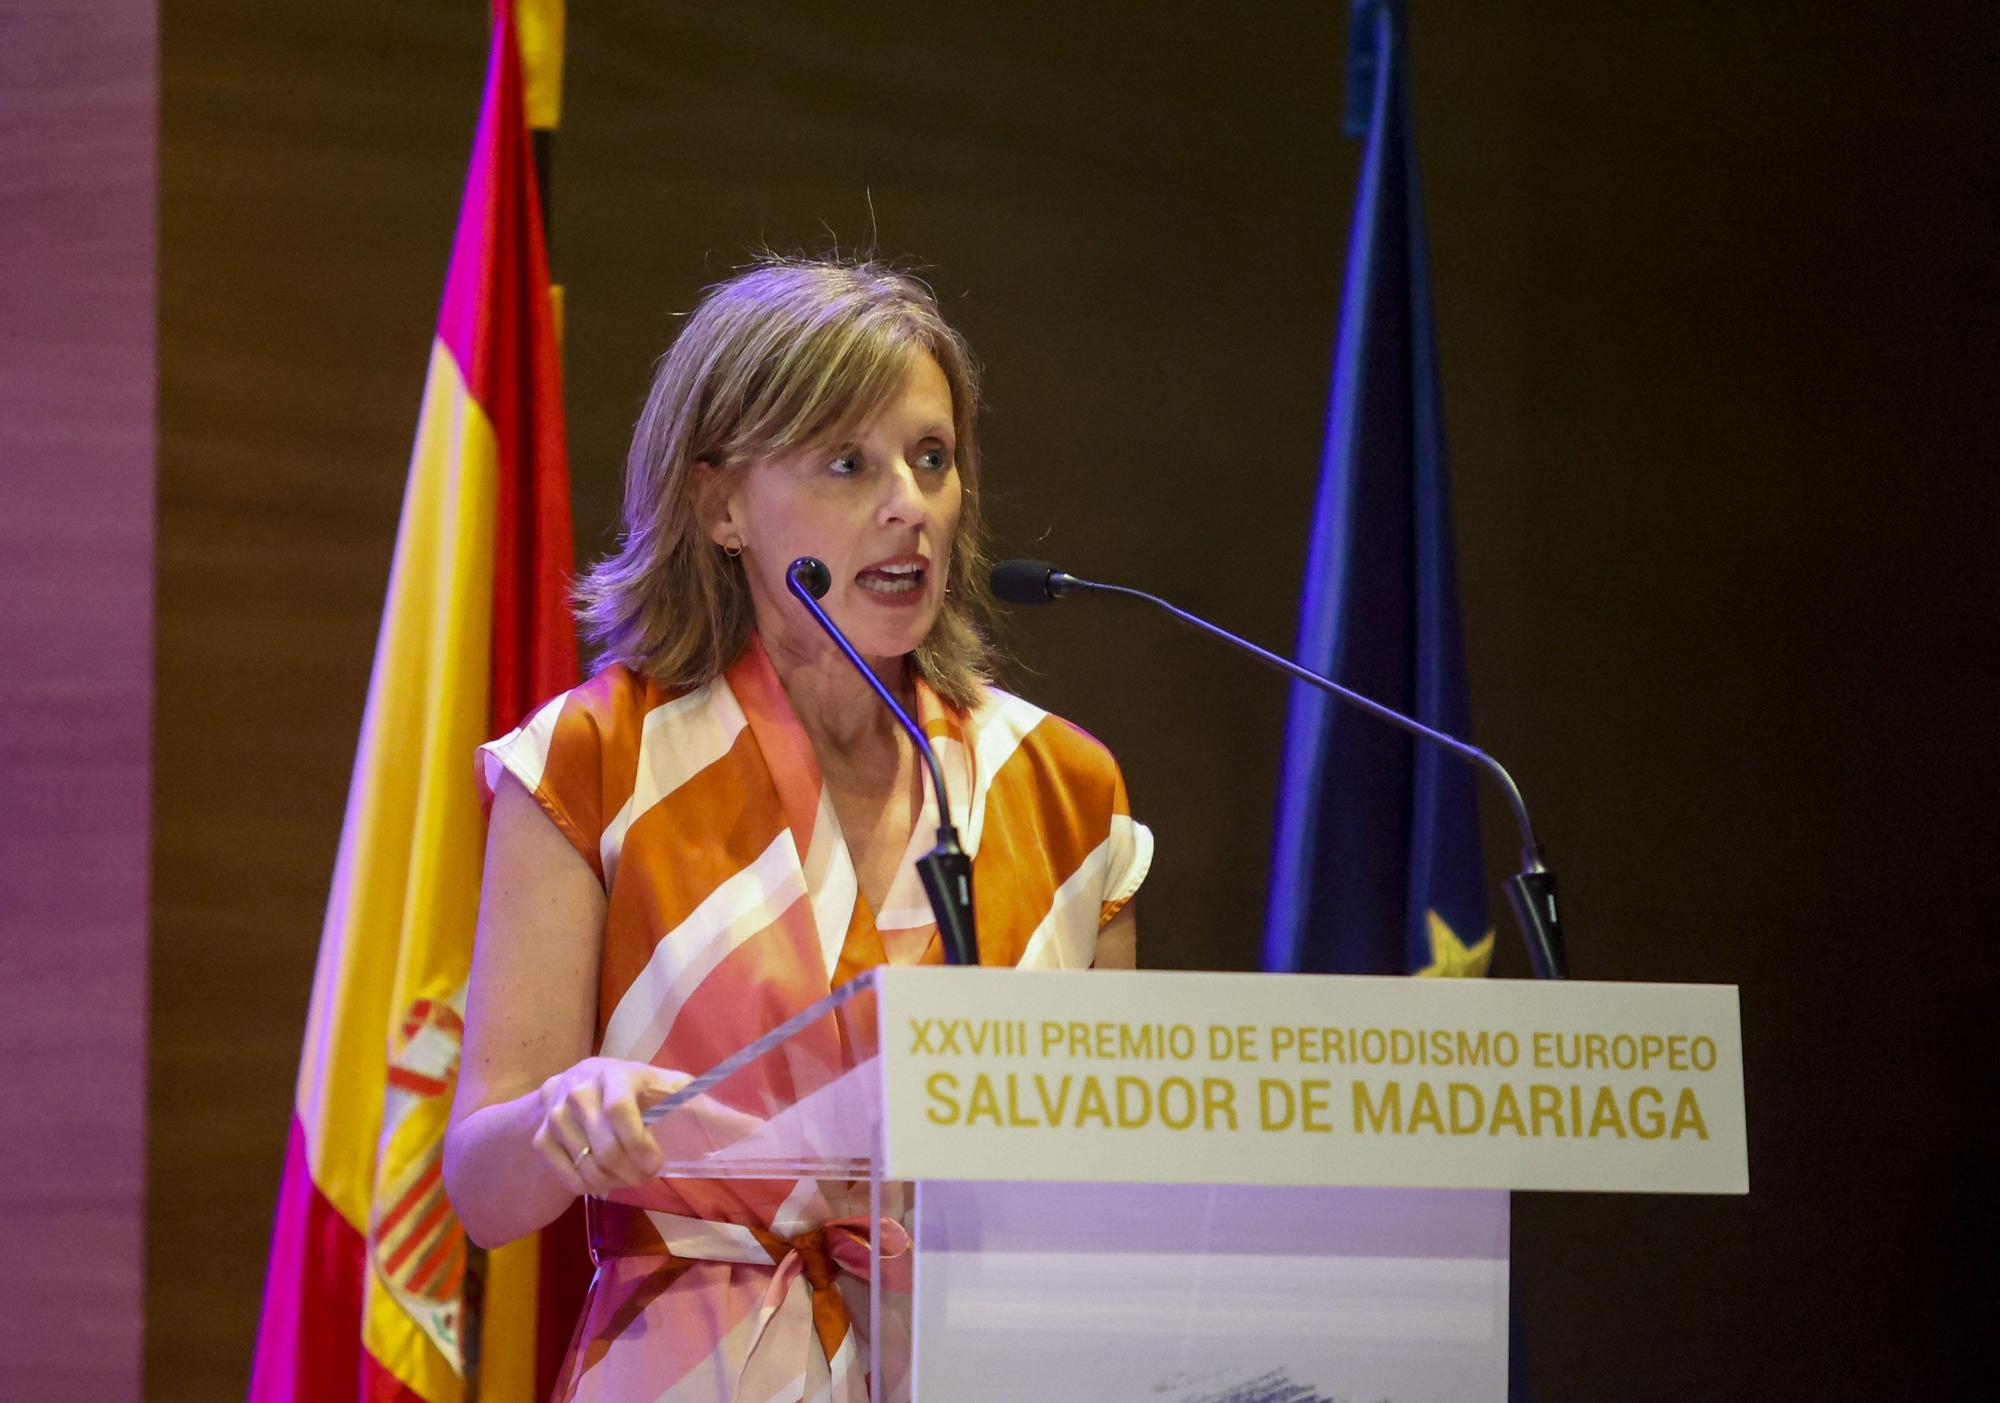 XXVIII Premio de Periodismo Europeo "Salvador de Madariaga"